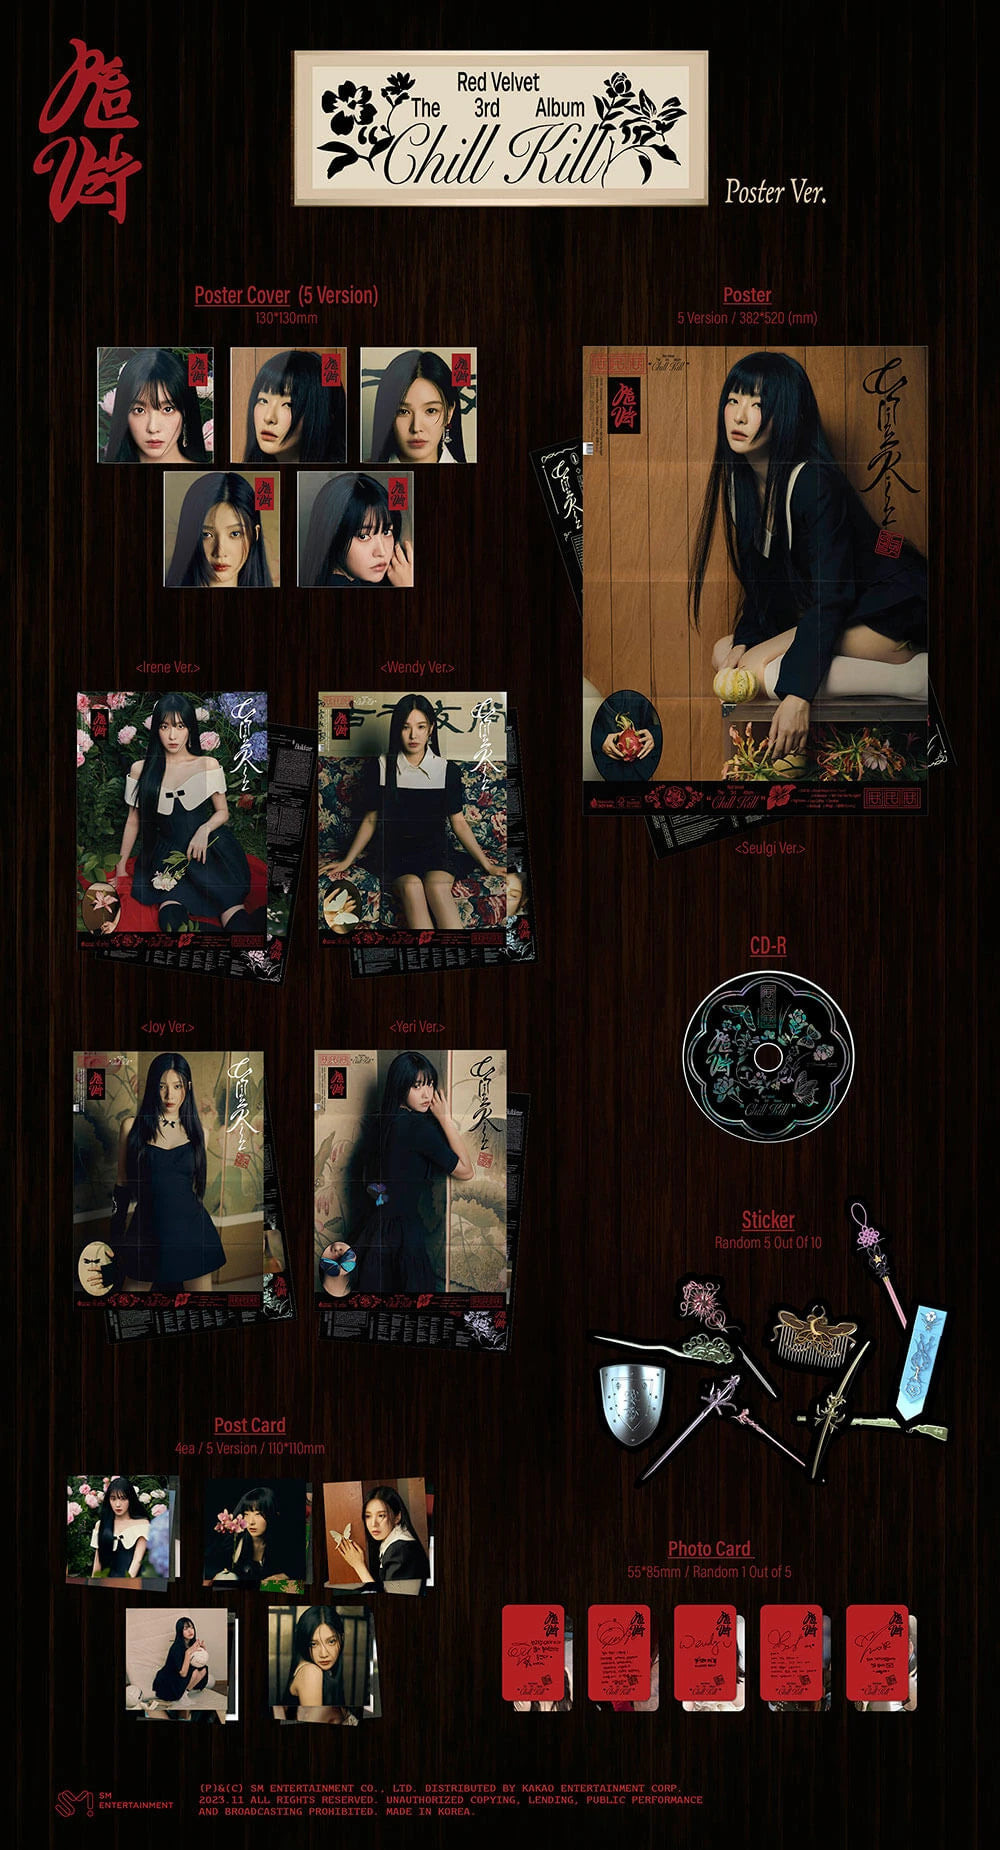 Red Velvet - Chill Kill (3rd Full-Length Album) Poster Ver.